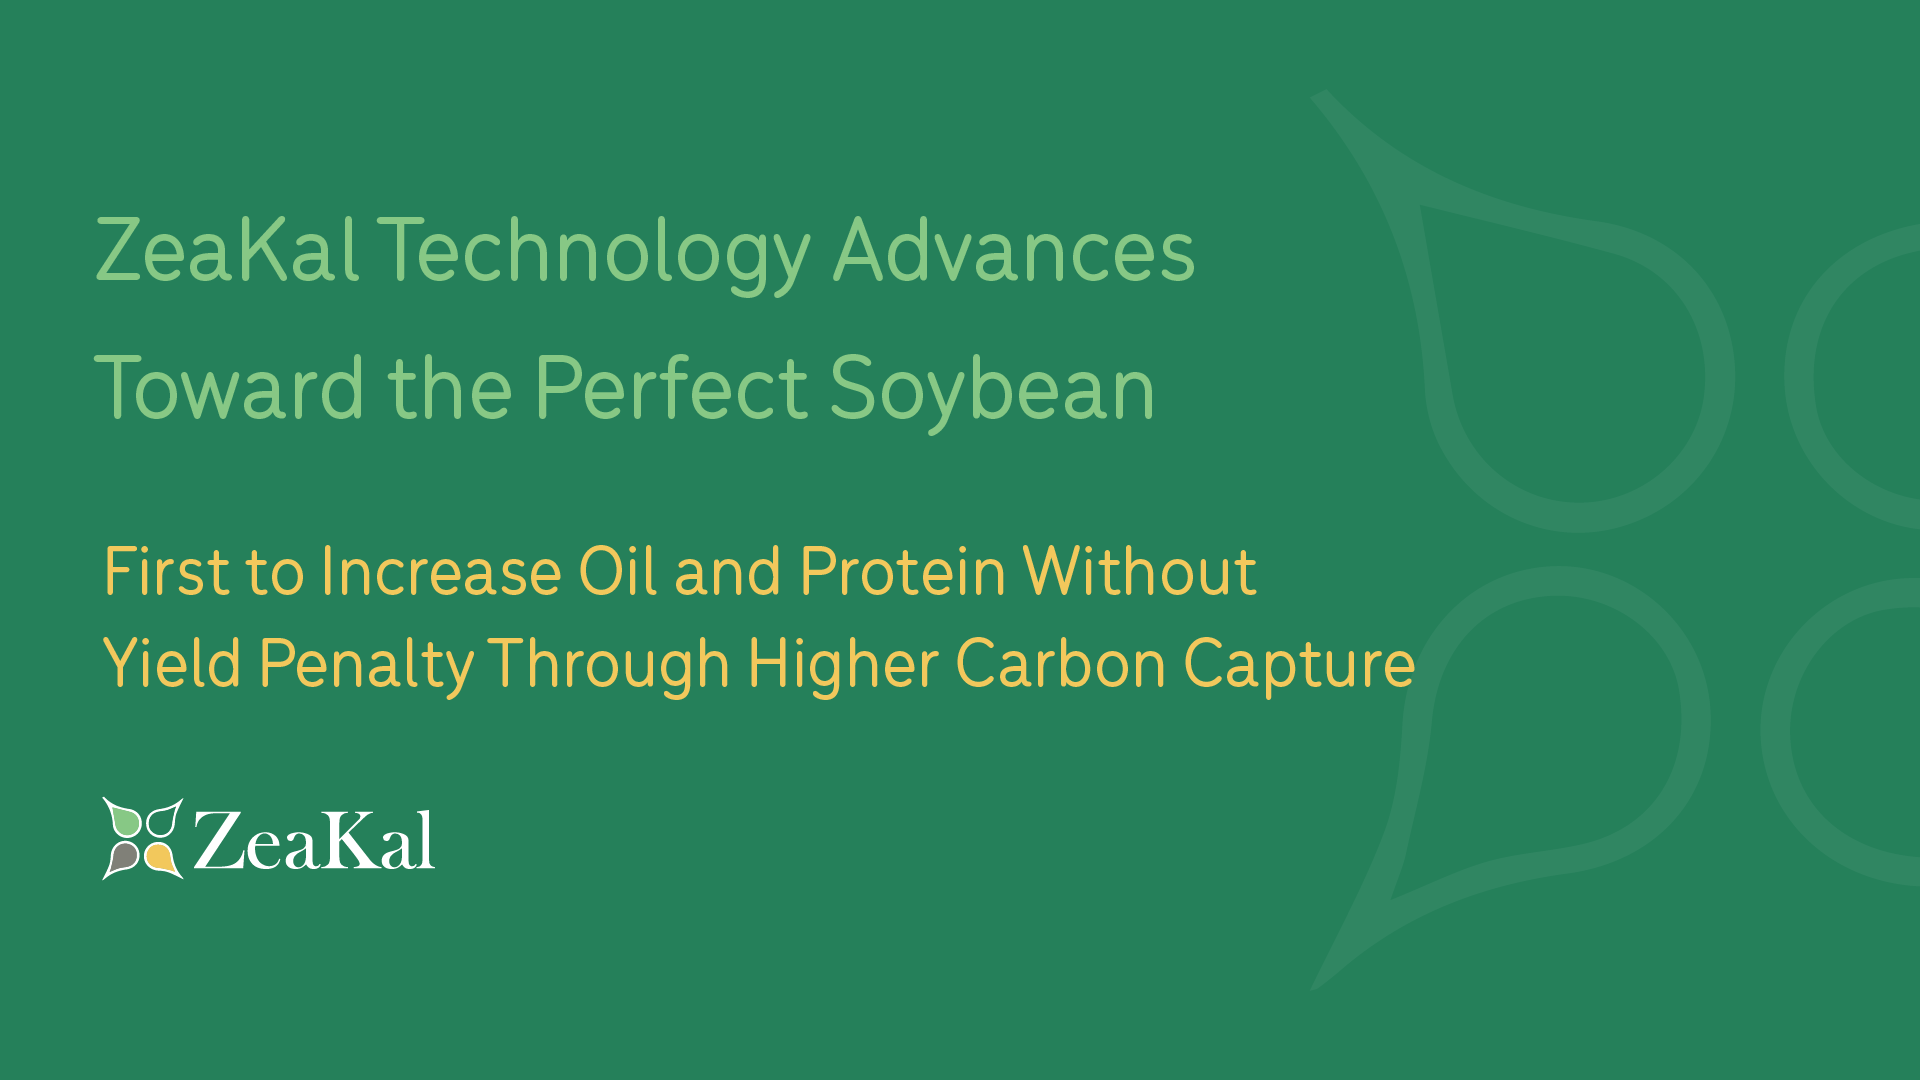 ZeaKal technology advances toward the perfect soybean